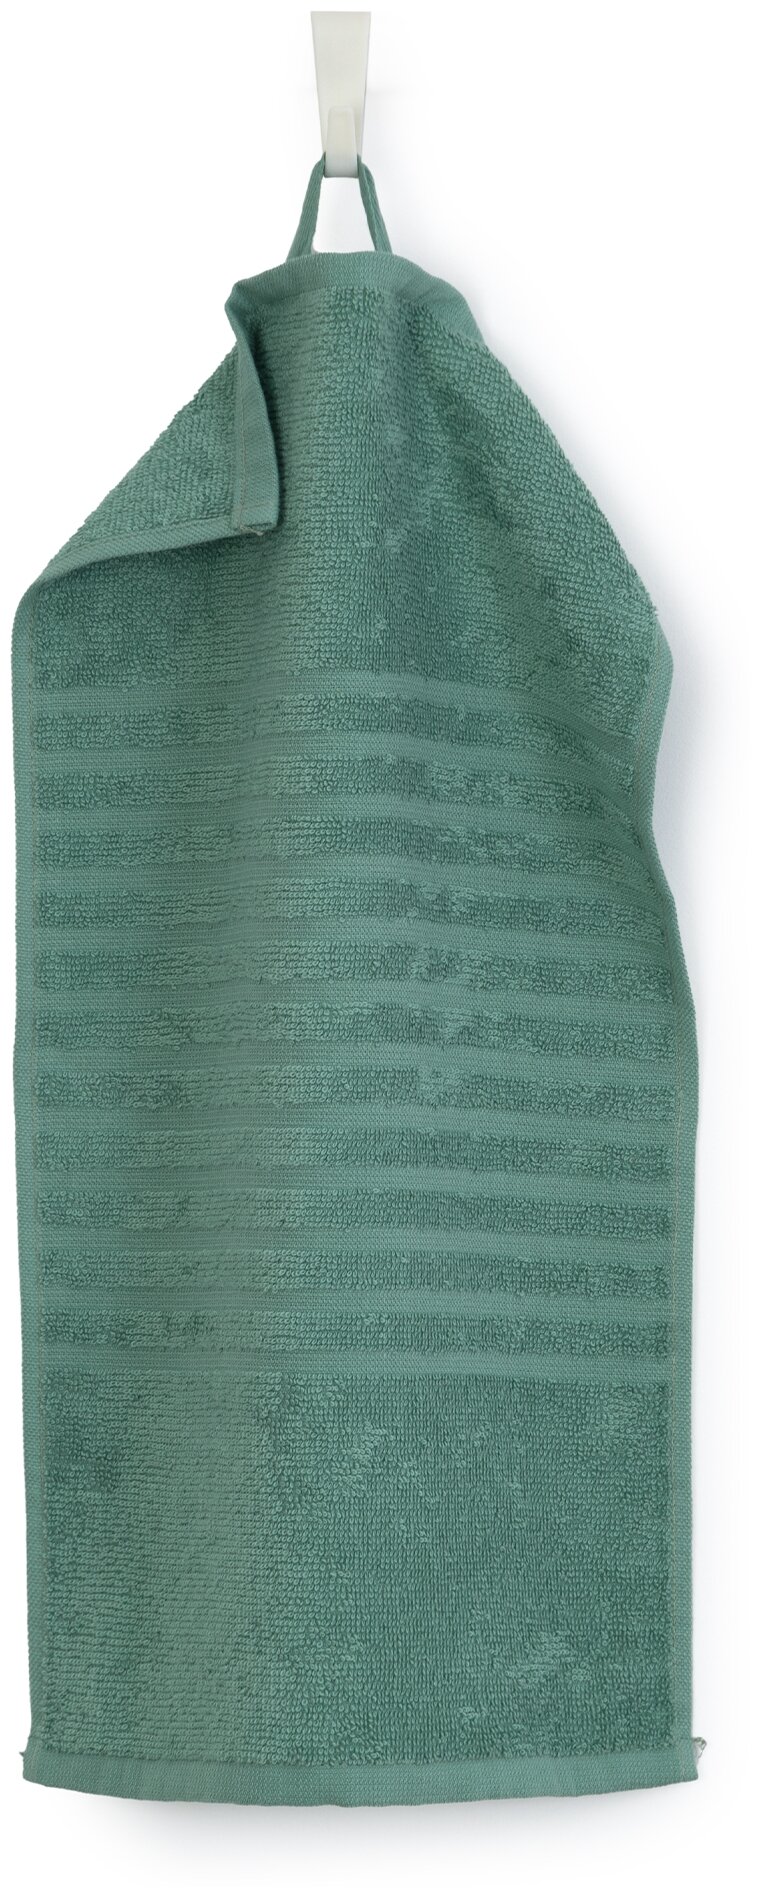 Салфетка махровая, полотенце для лица и рук, Донецкая мануфактура, 30Х50 см, цвет:зеленая камея, 100% хлопок - фотография № 1